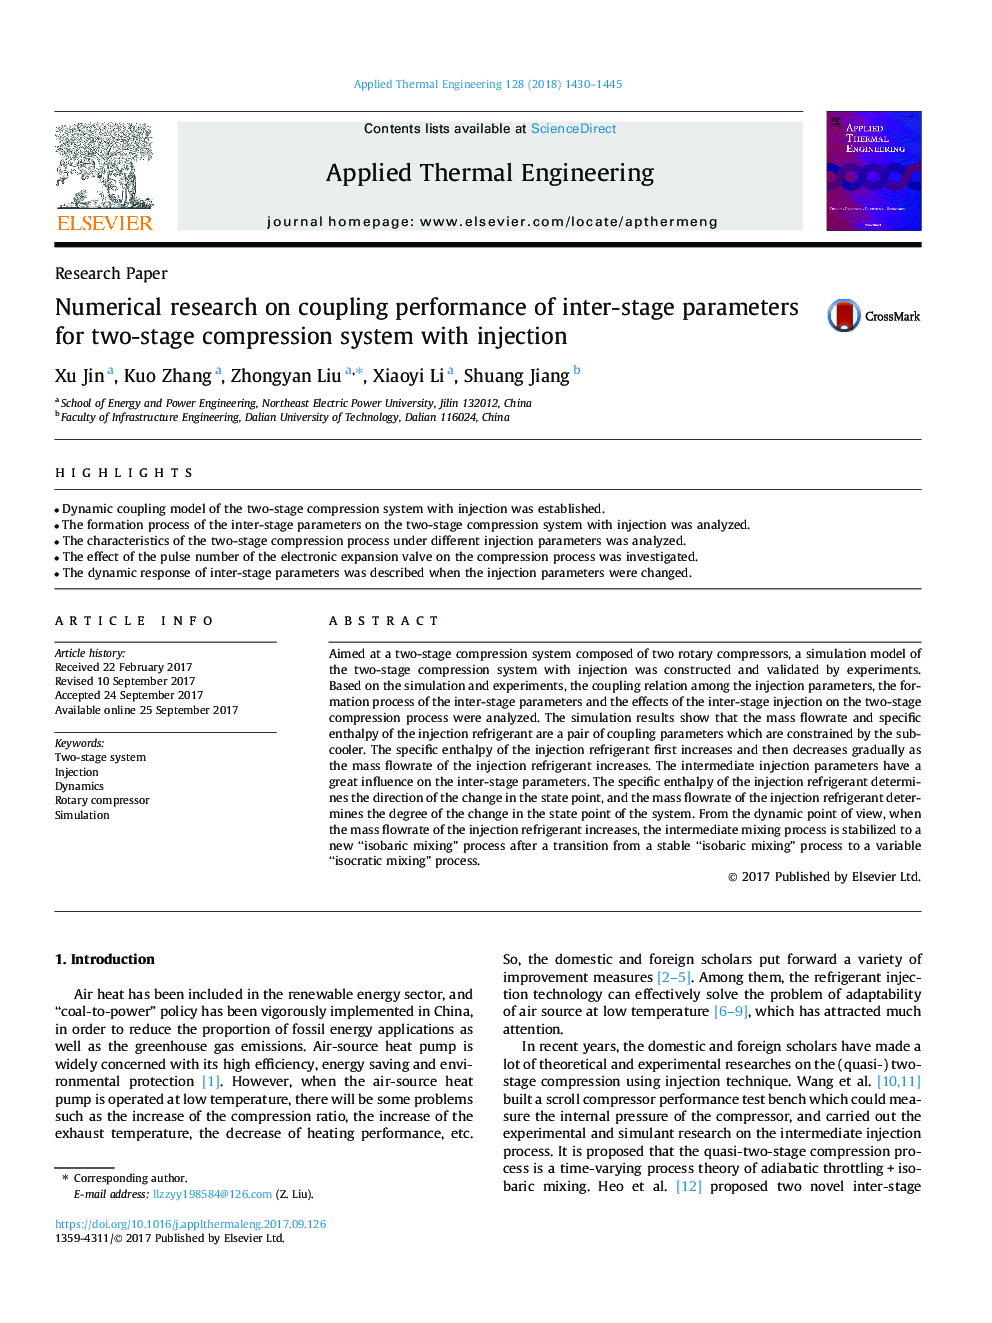 مقاله پژوهشی تحقیق عاملی در مورد عملکرد جفت شدن پارامترهای بین مرحله ای برای سیستم فشرده سازی دو مرحله ای با تزریق